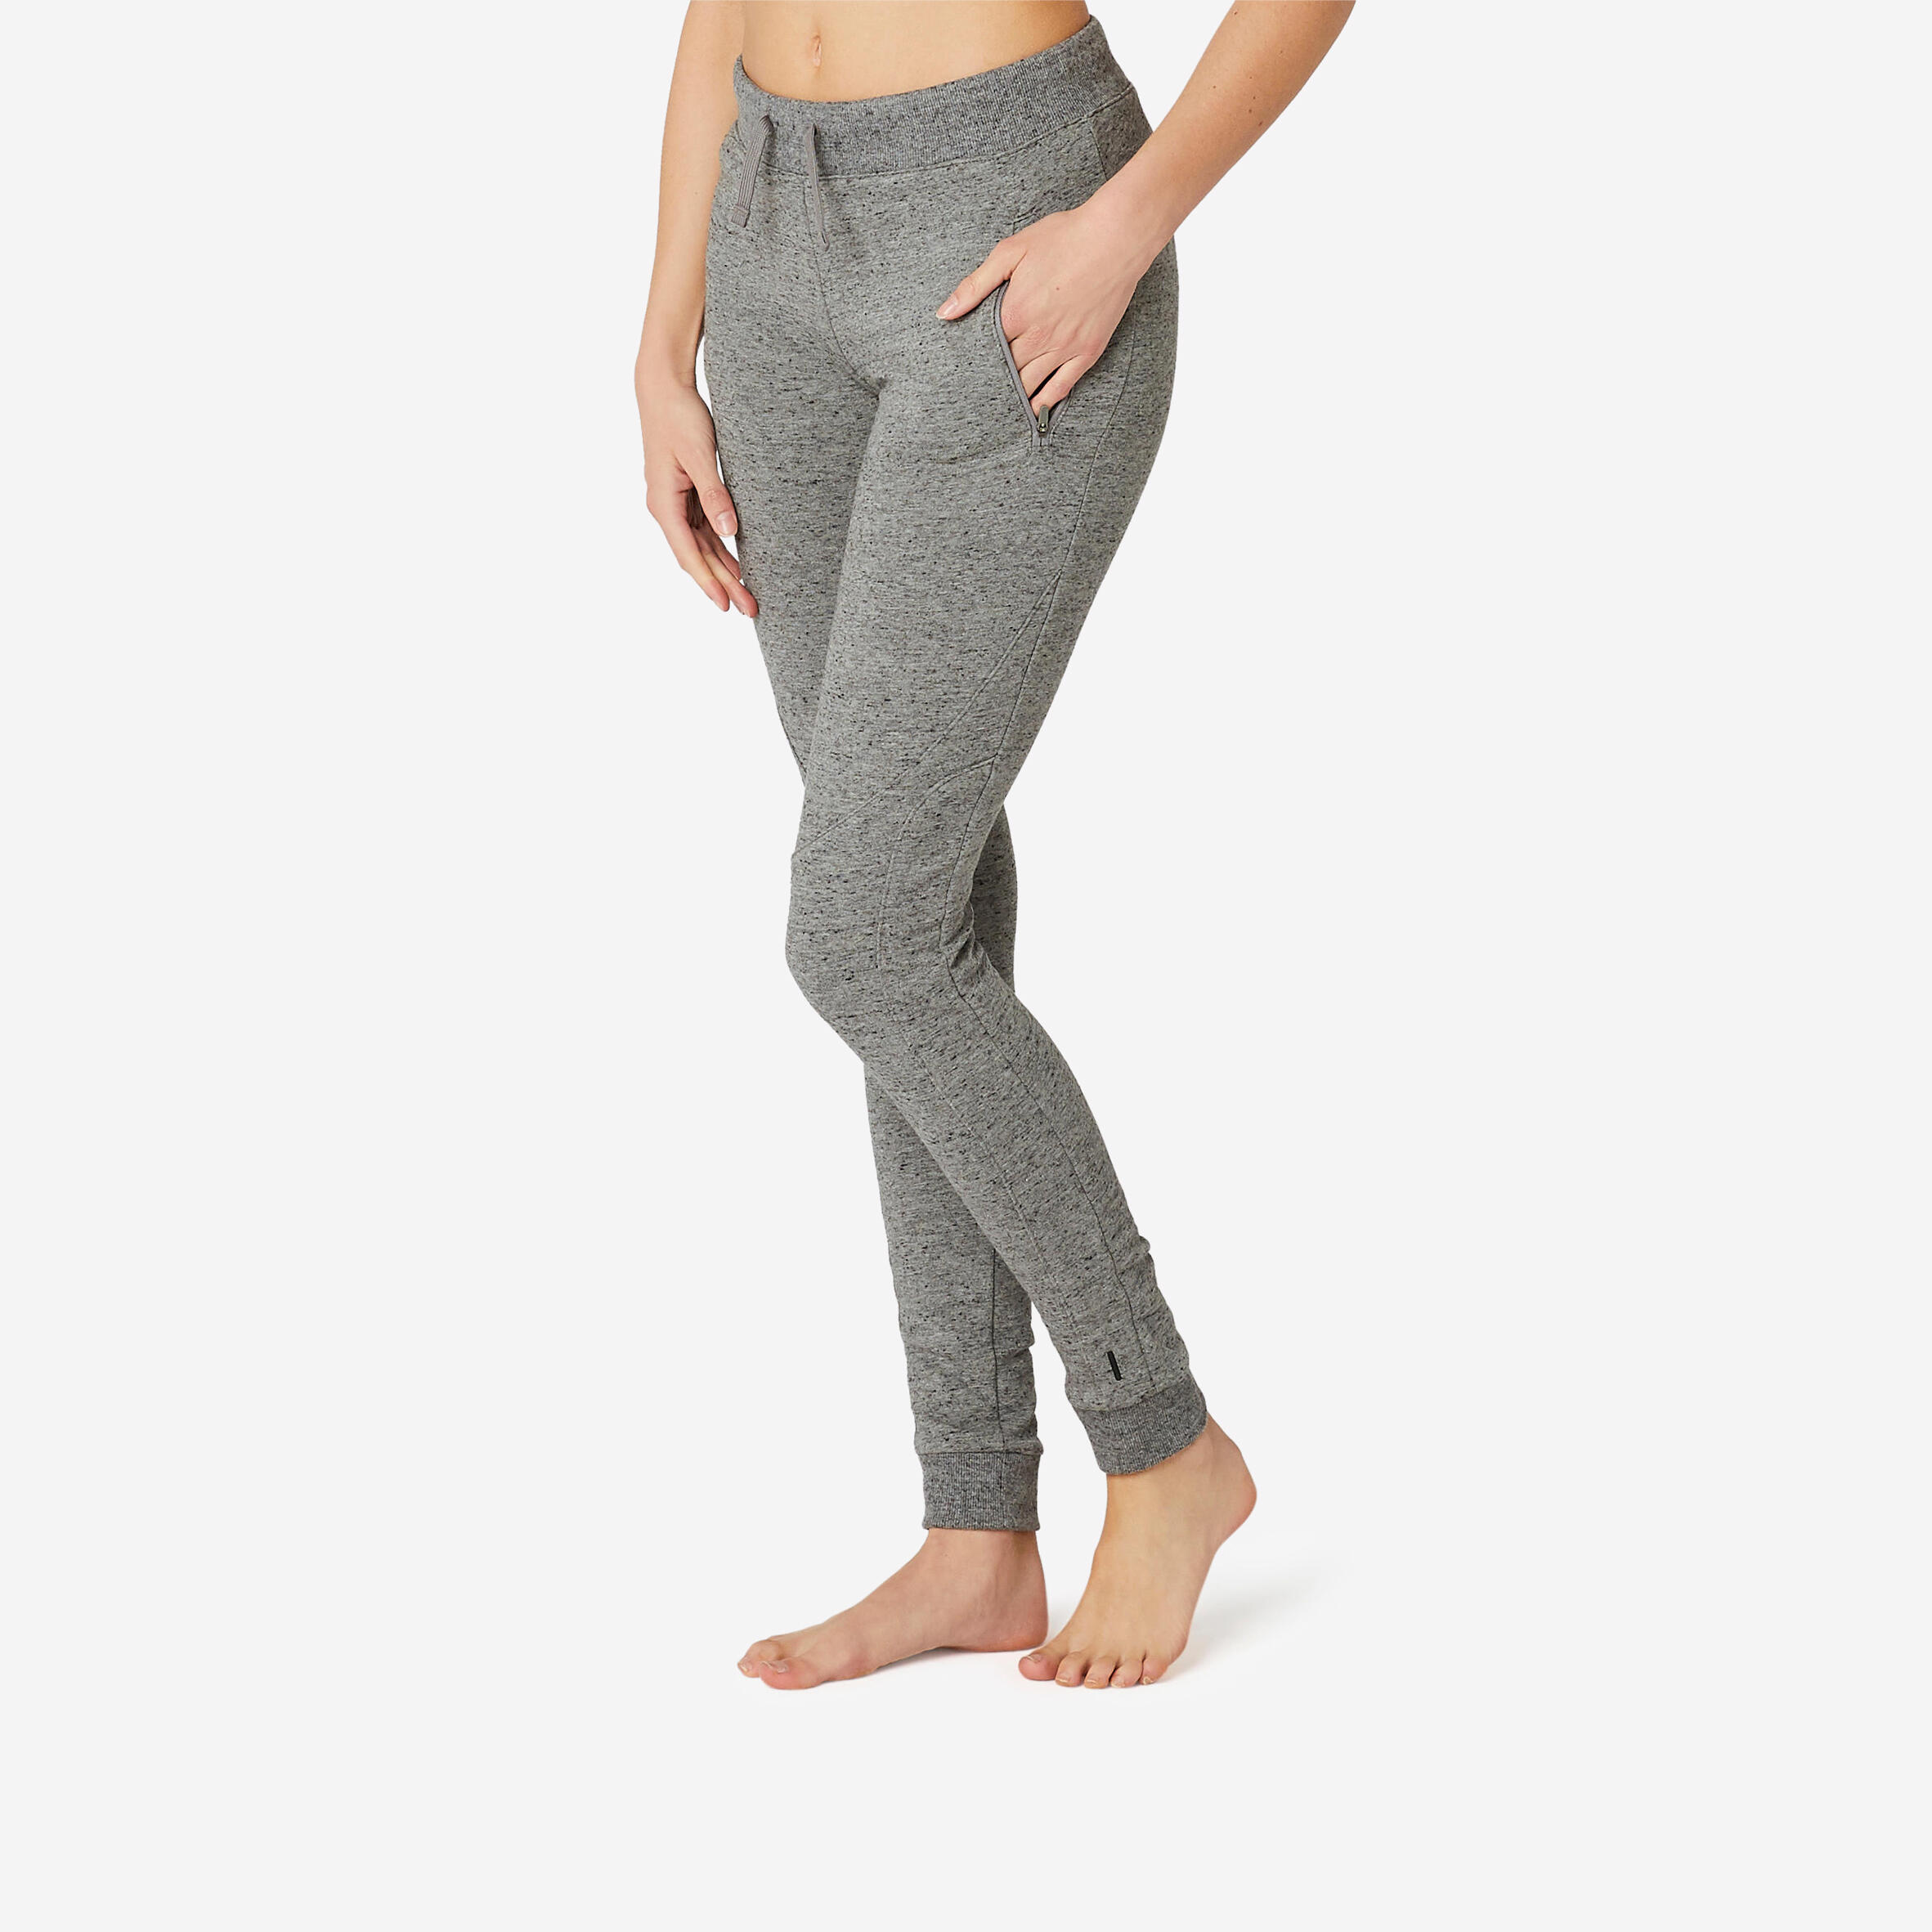 Grey Cargo Pants For Women Online – Buy Grey Cargo Pants Online in India